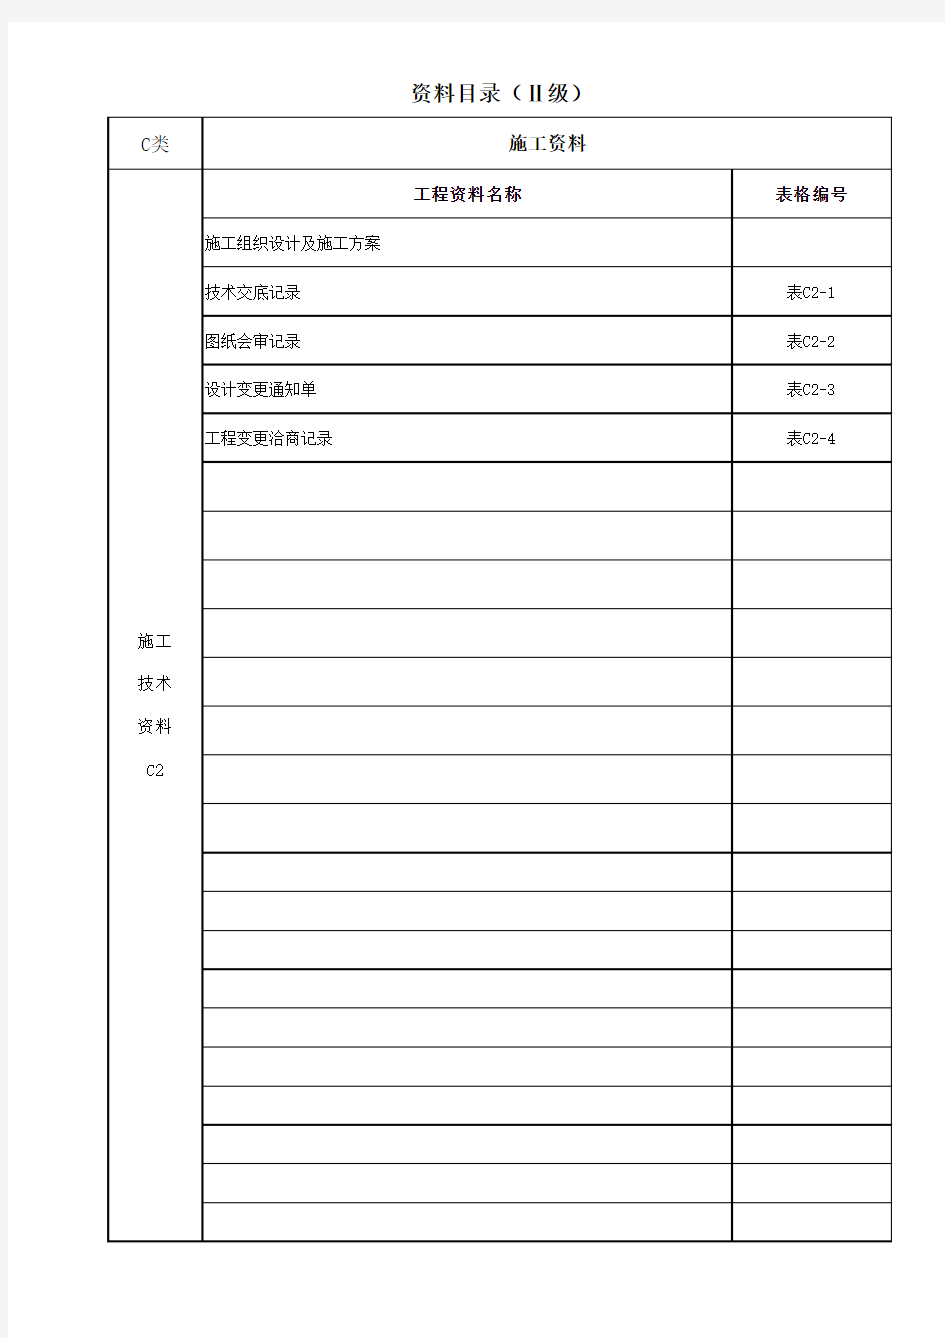 北京市工程资料三级目录(完善全面版)